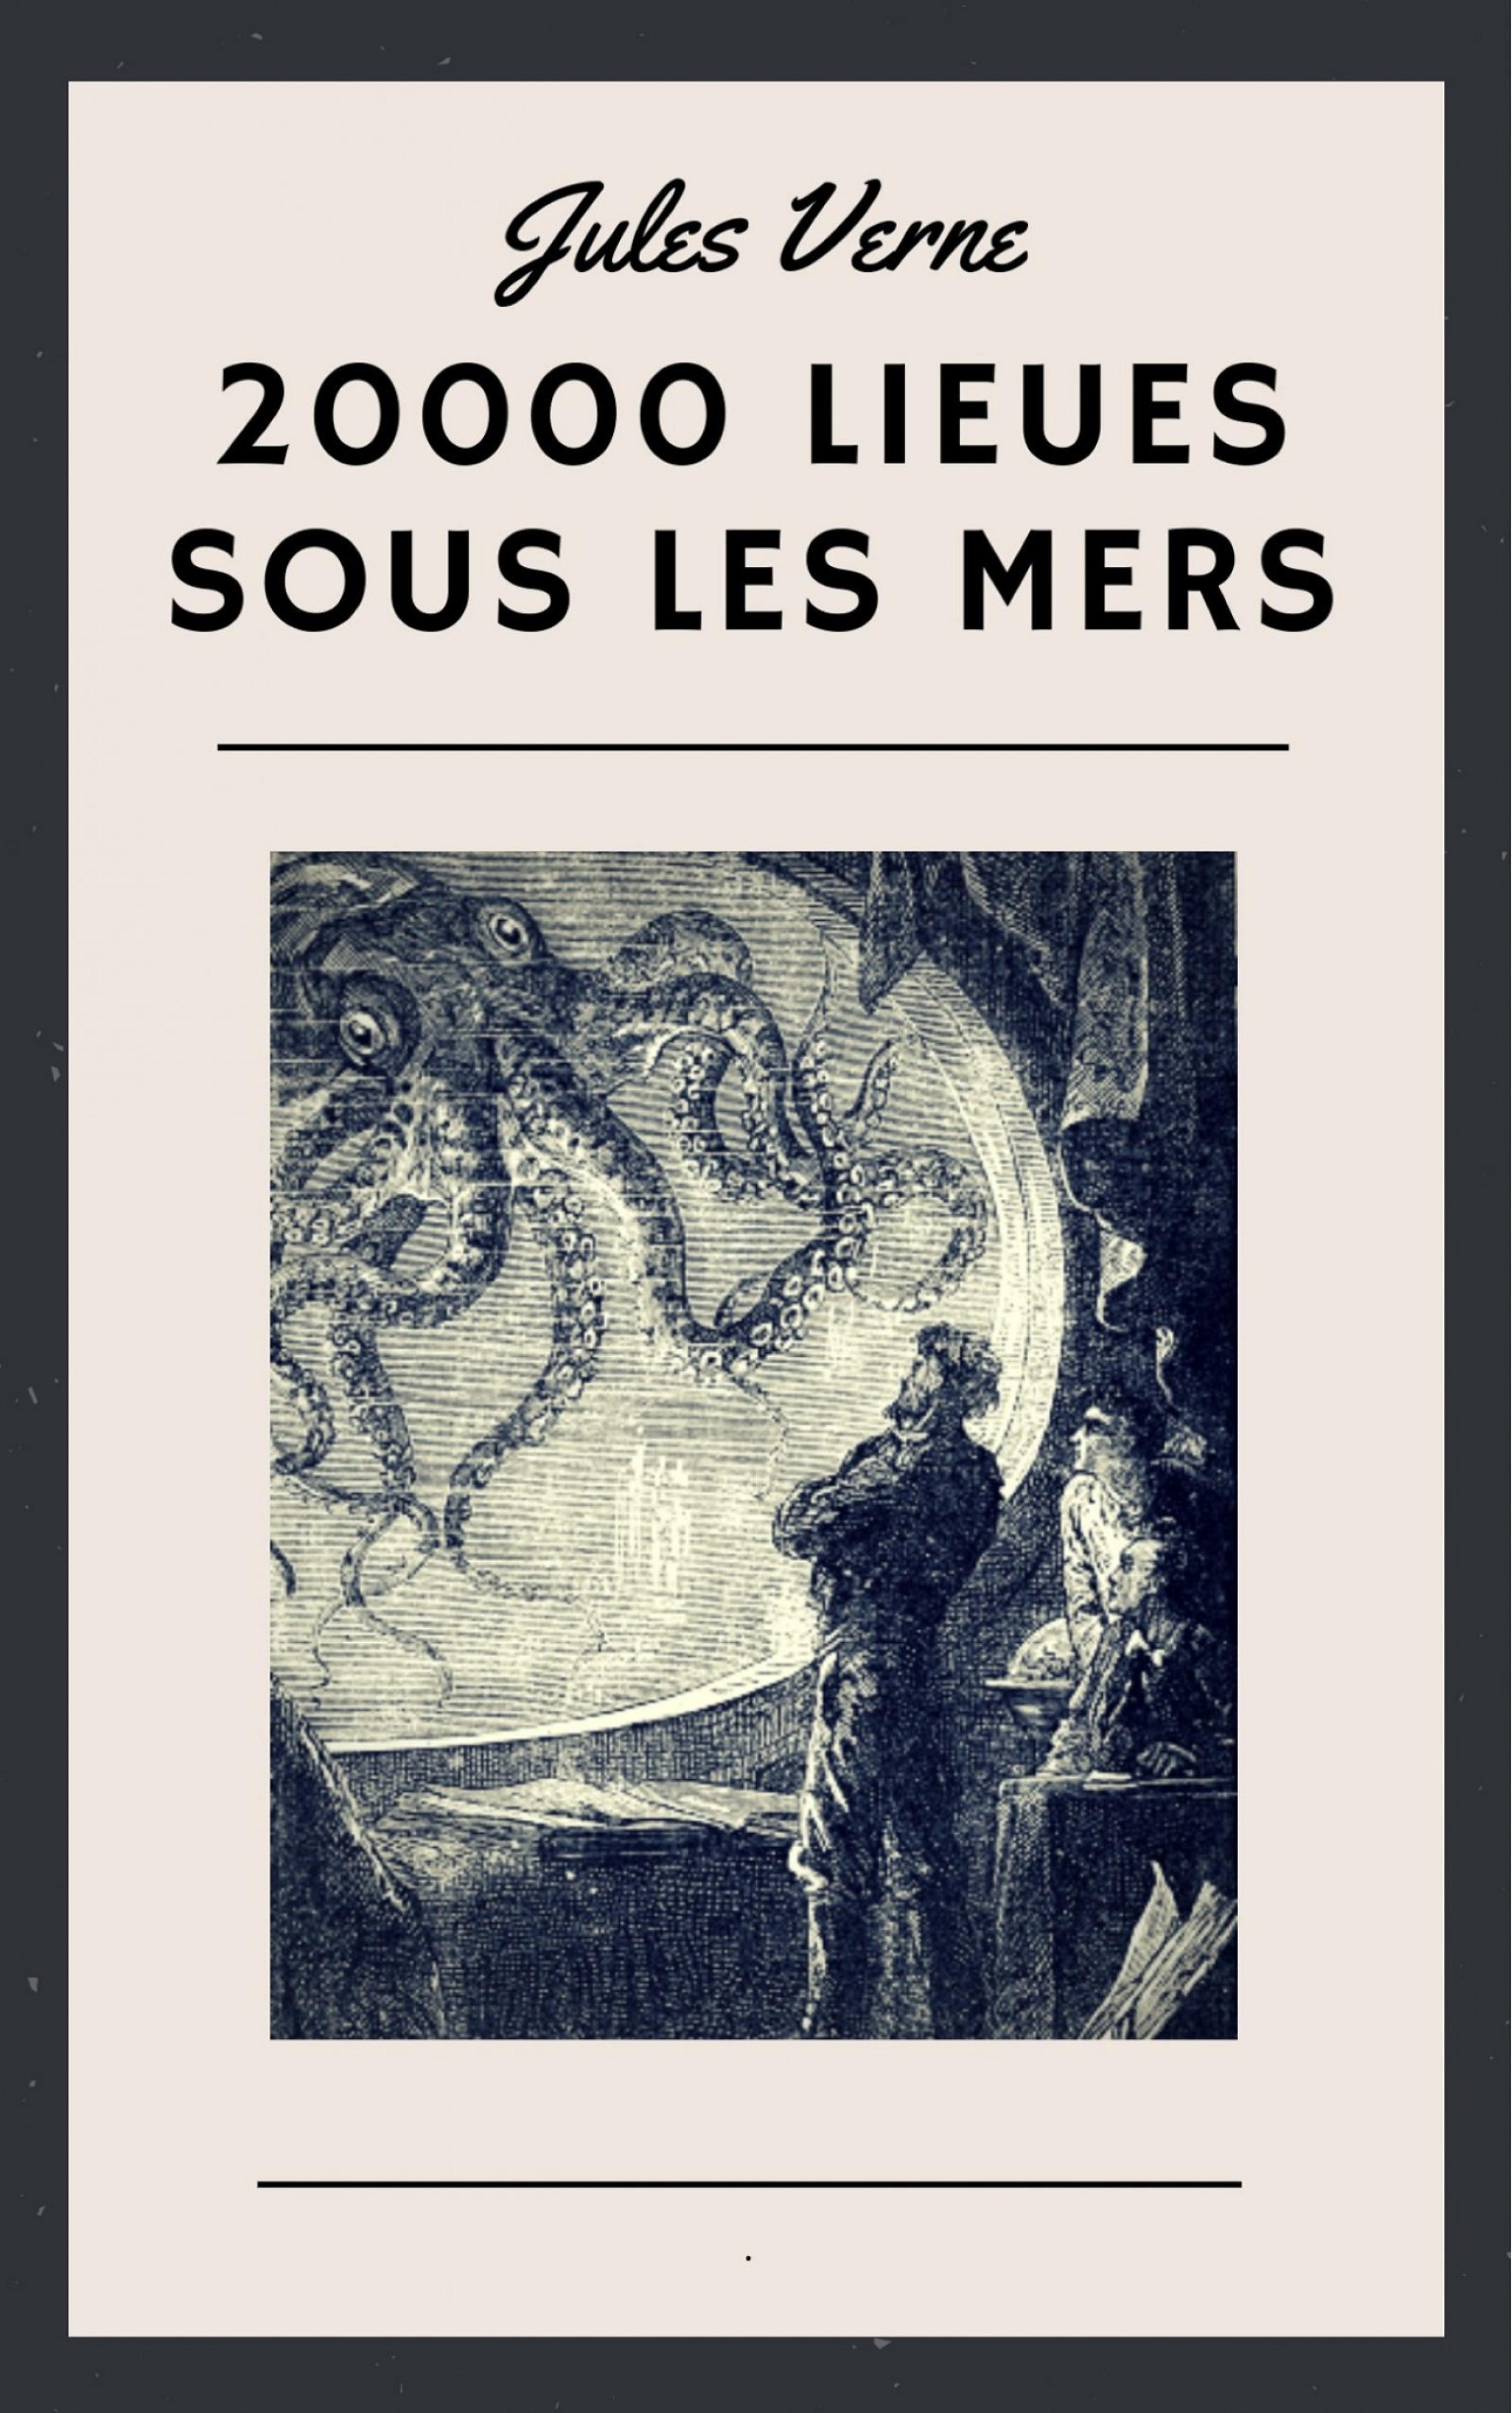 Jules Verne: 20000 lieues sous les mers